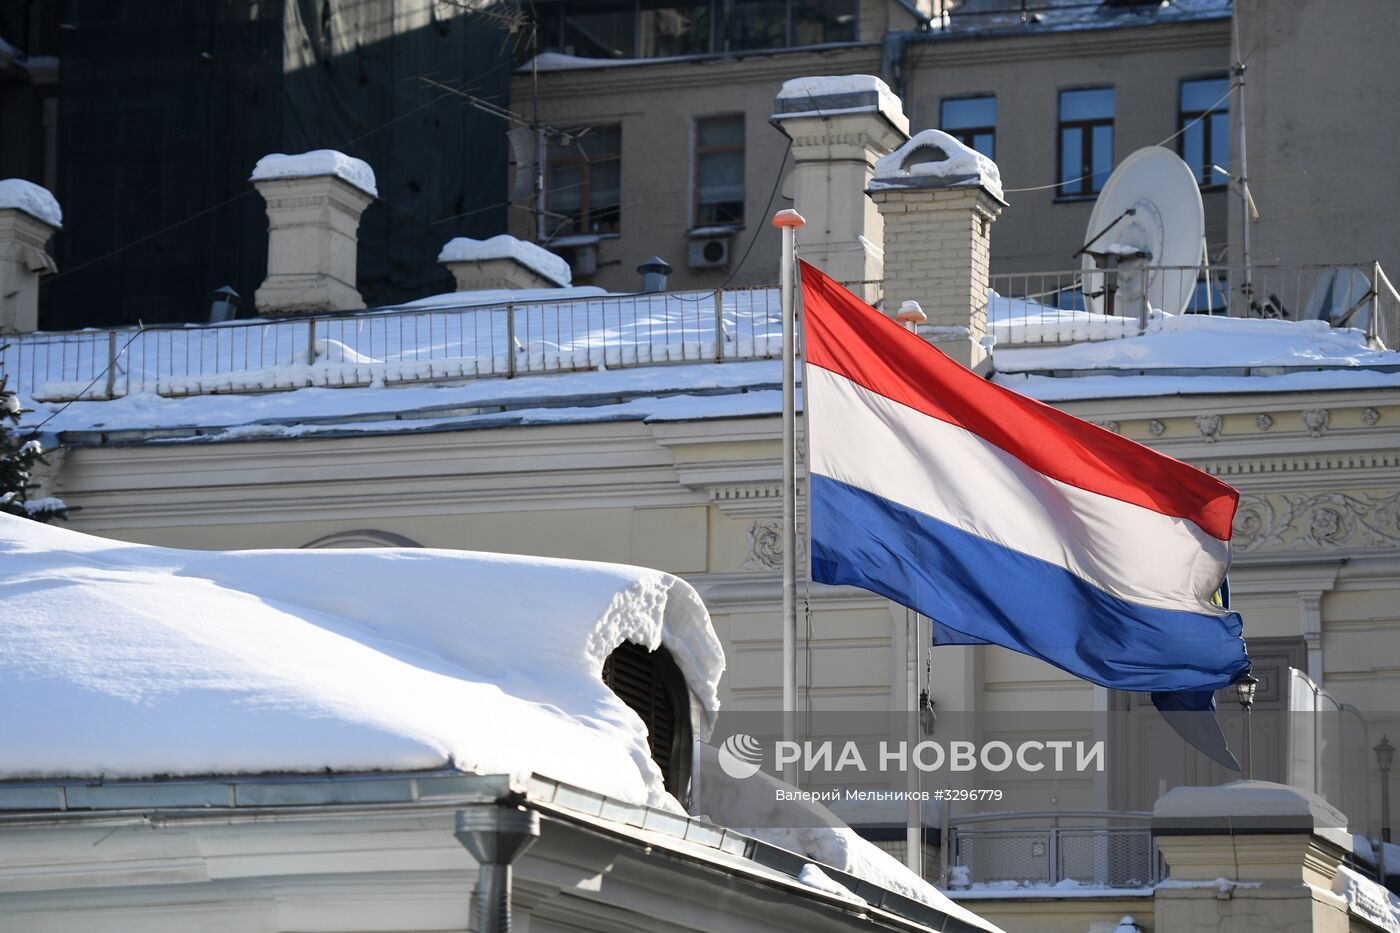 Посольство Нидерландов в Москве